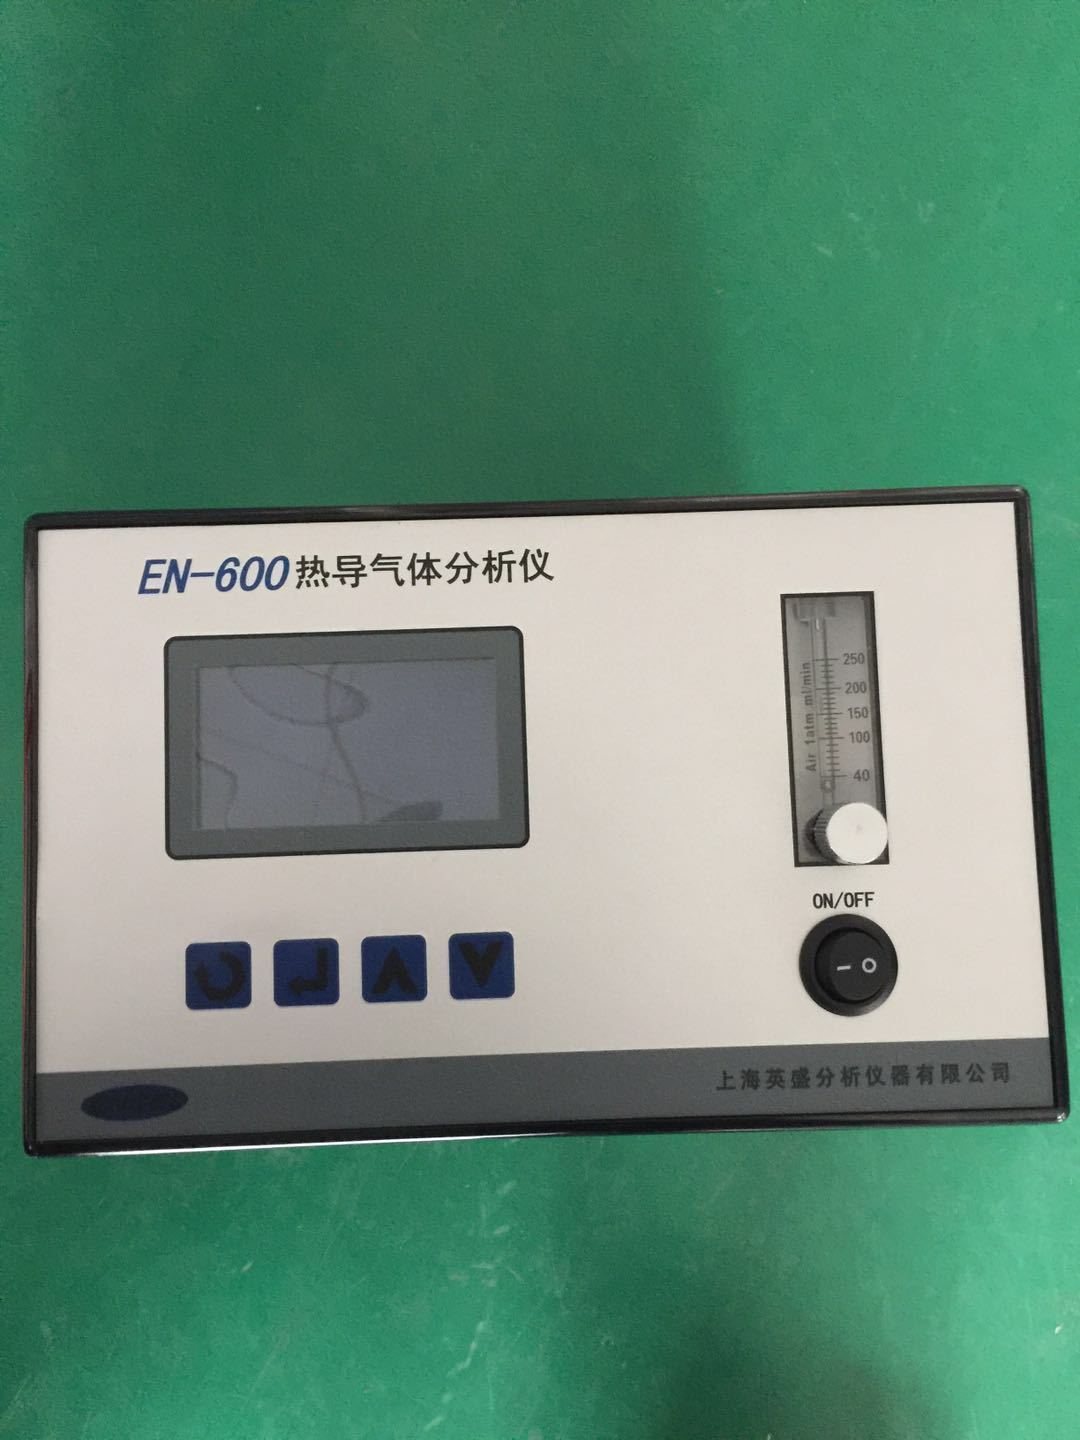 EN-600系列热导式气体分析仪